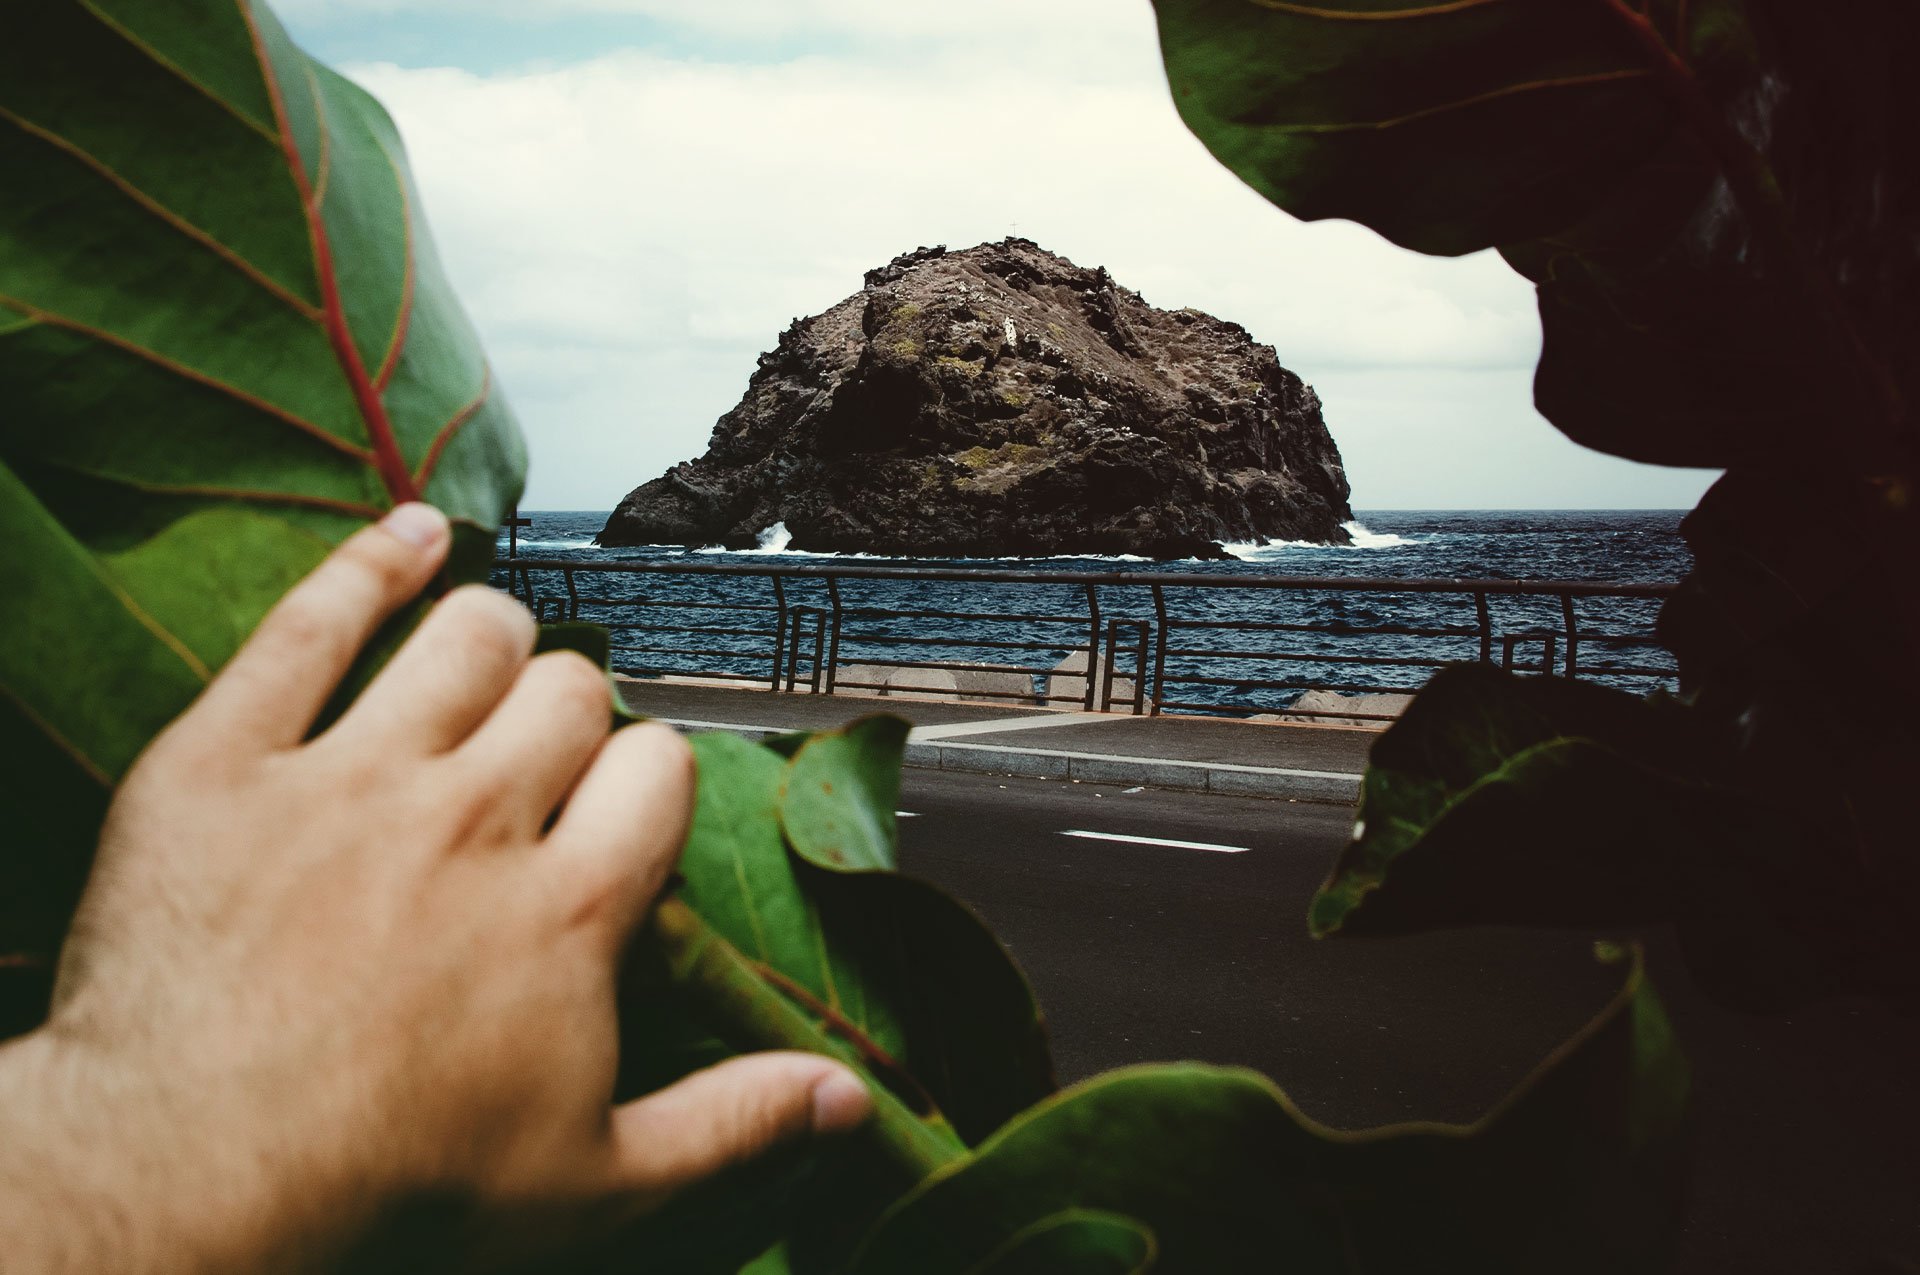 Foto de una mano en la parte inferior izquierda apartando unas hojas que dan vista a una barandilla desde la cual se puede ver el mar mientras las olas golpeando una enorme roca